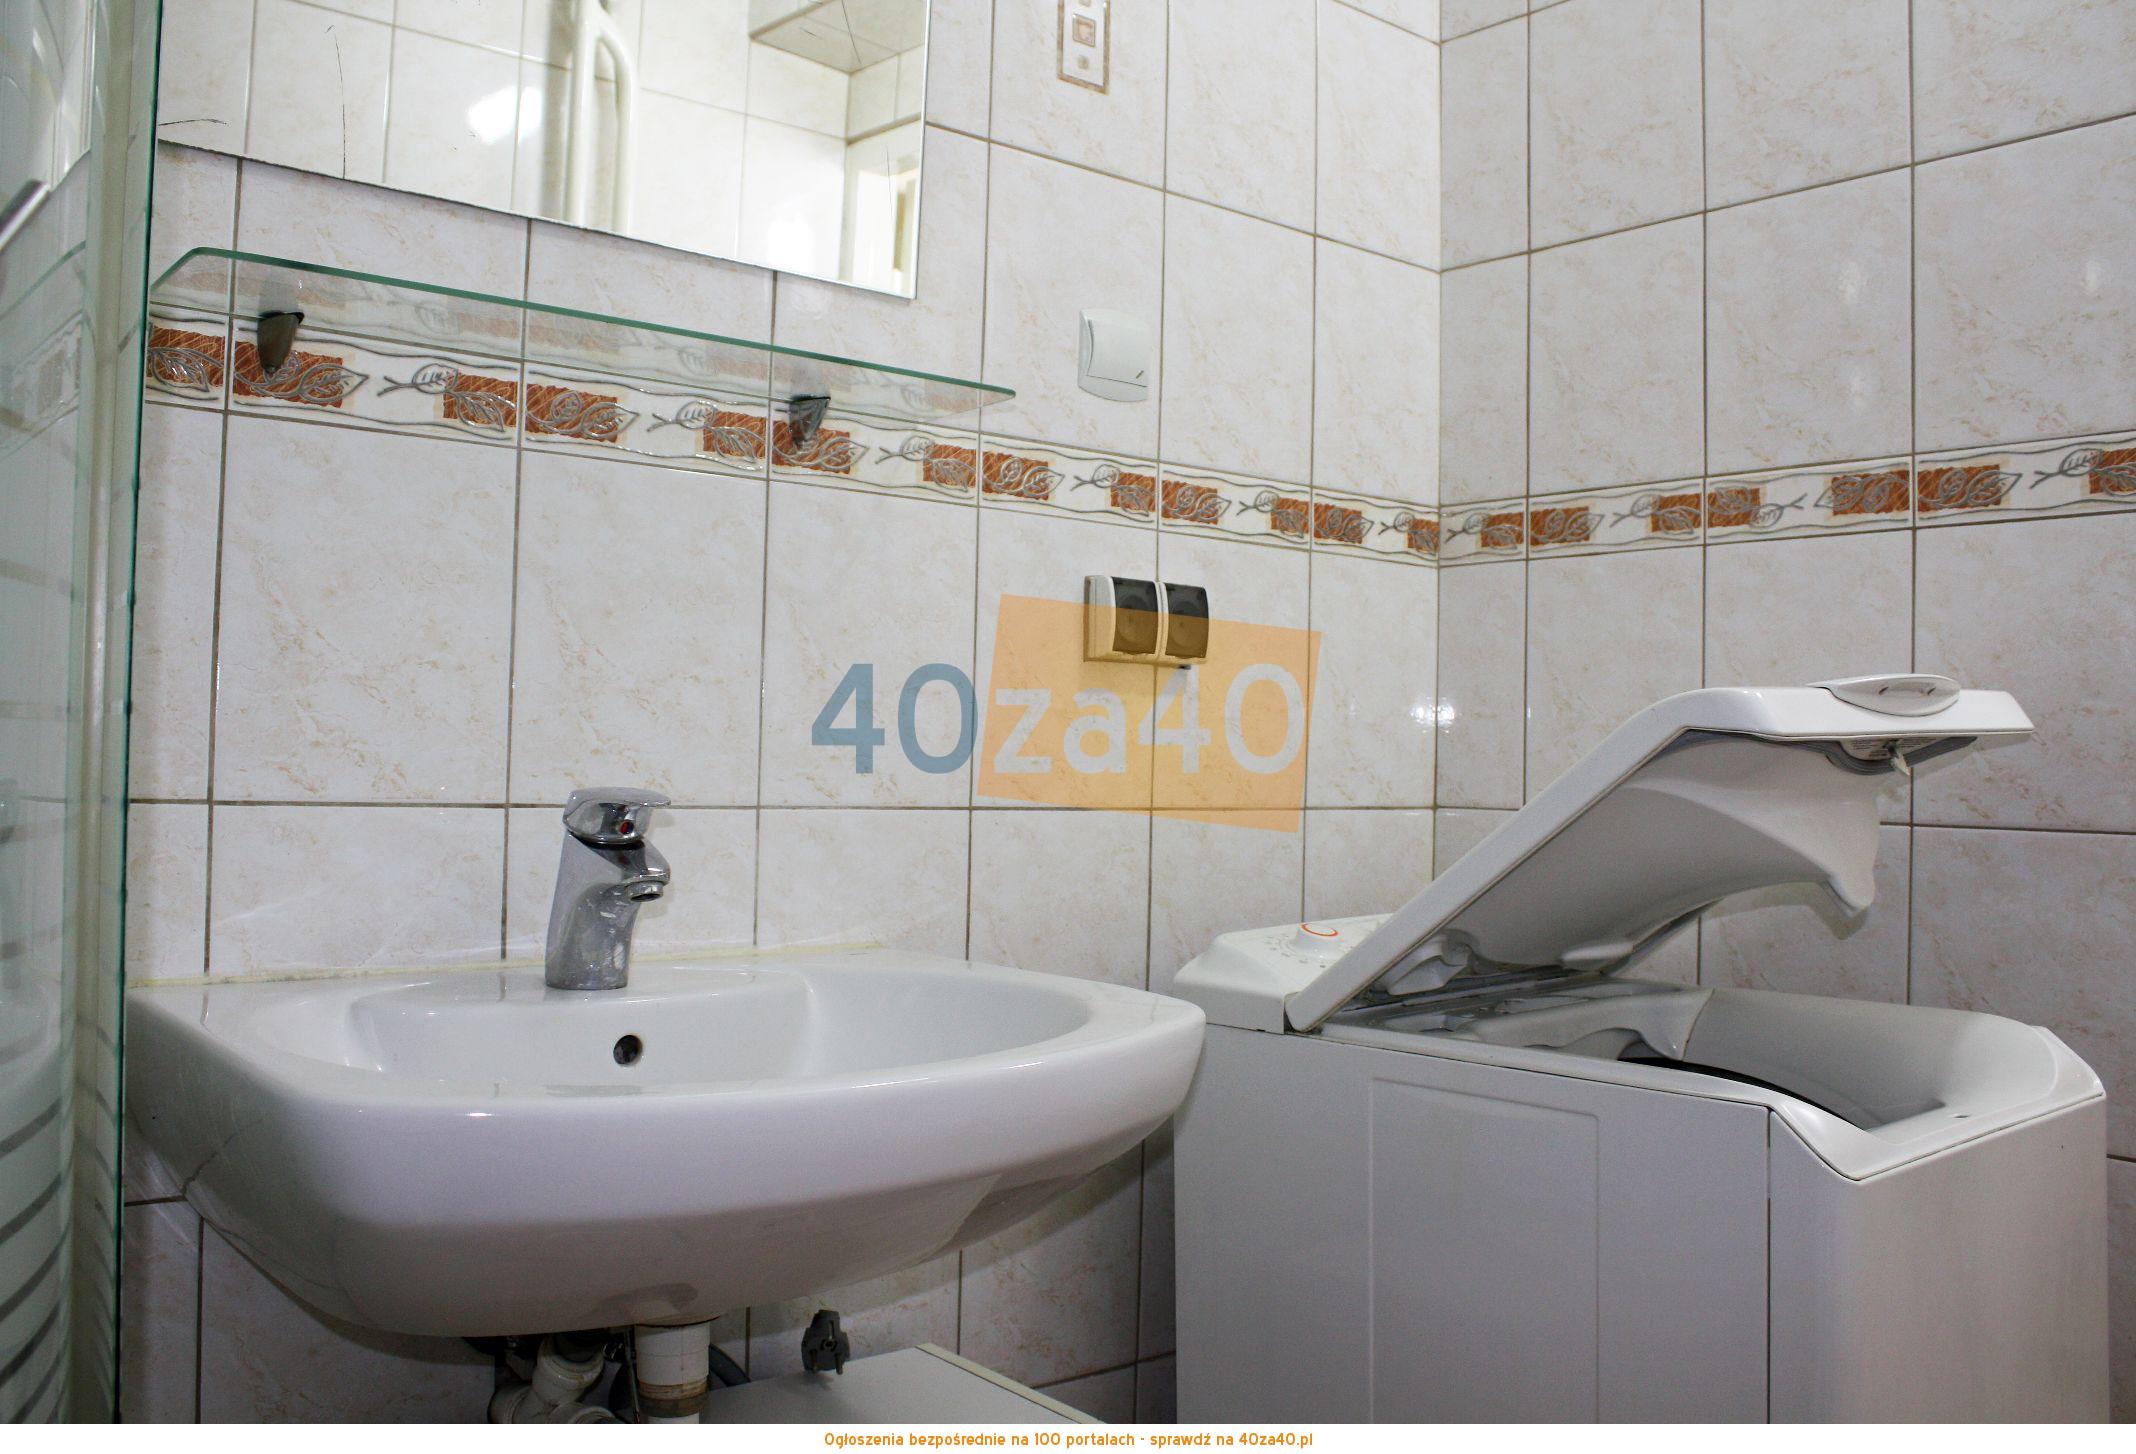 Mieszkanie do wynajęcia, pokoje: 1, cena: 750,00 PLN, Łódź, kontakt: 669330339